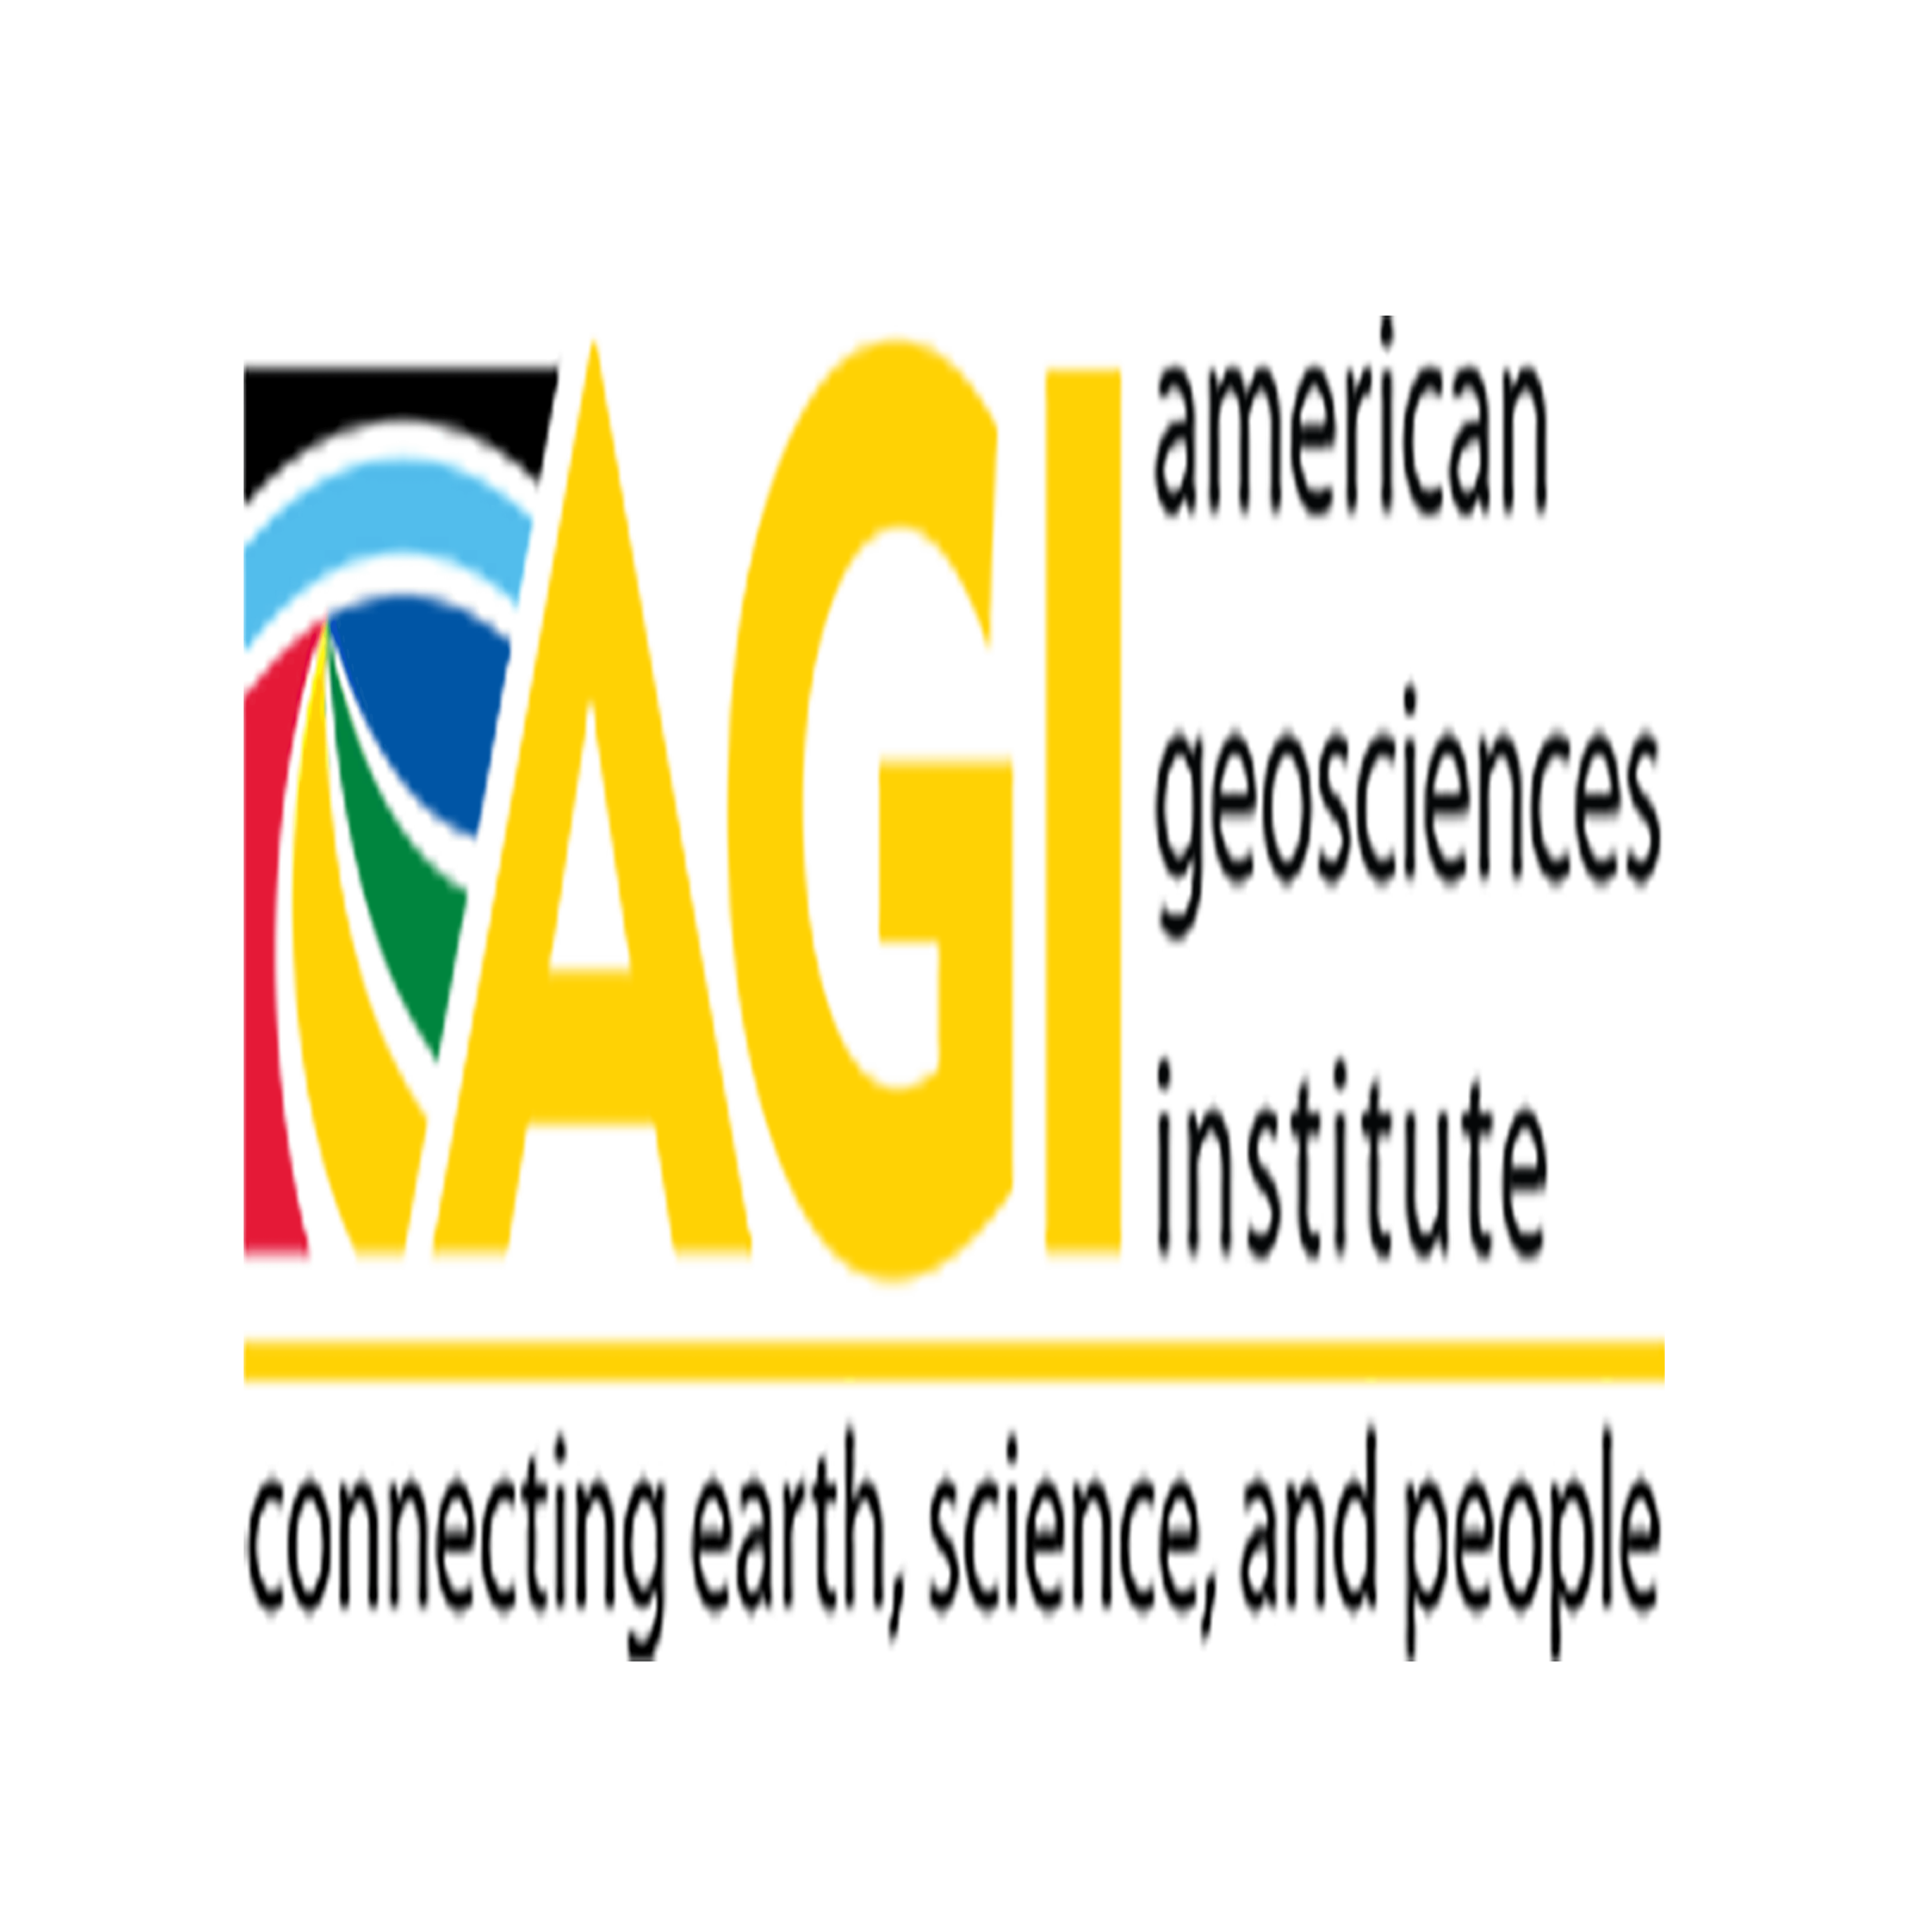 American Geosciences Institute